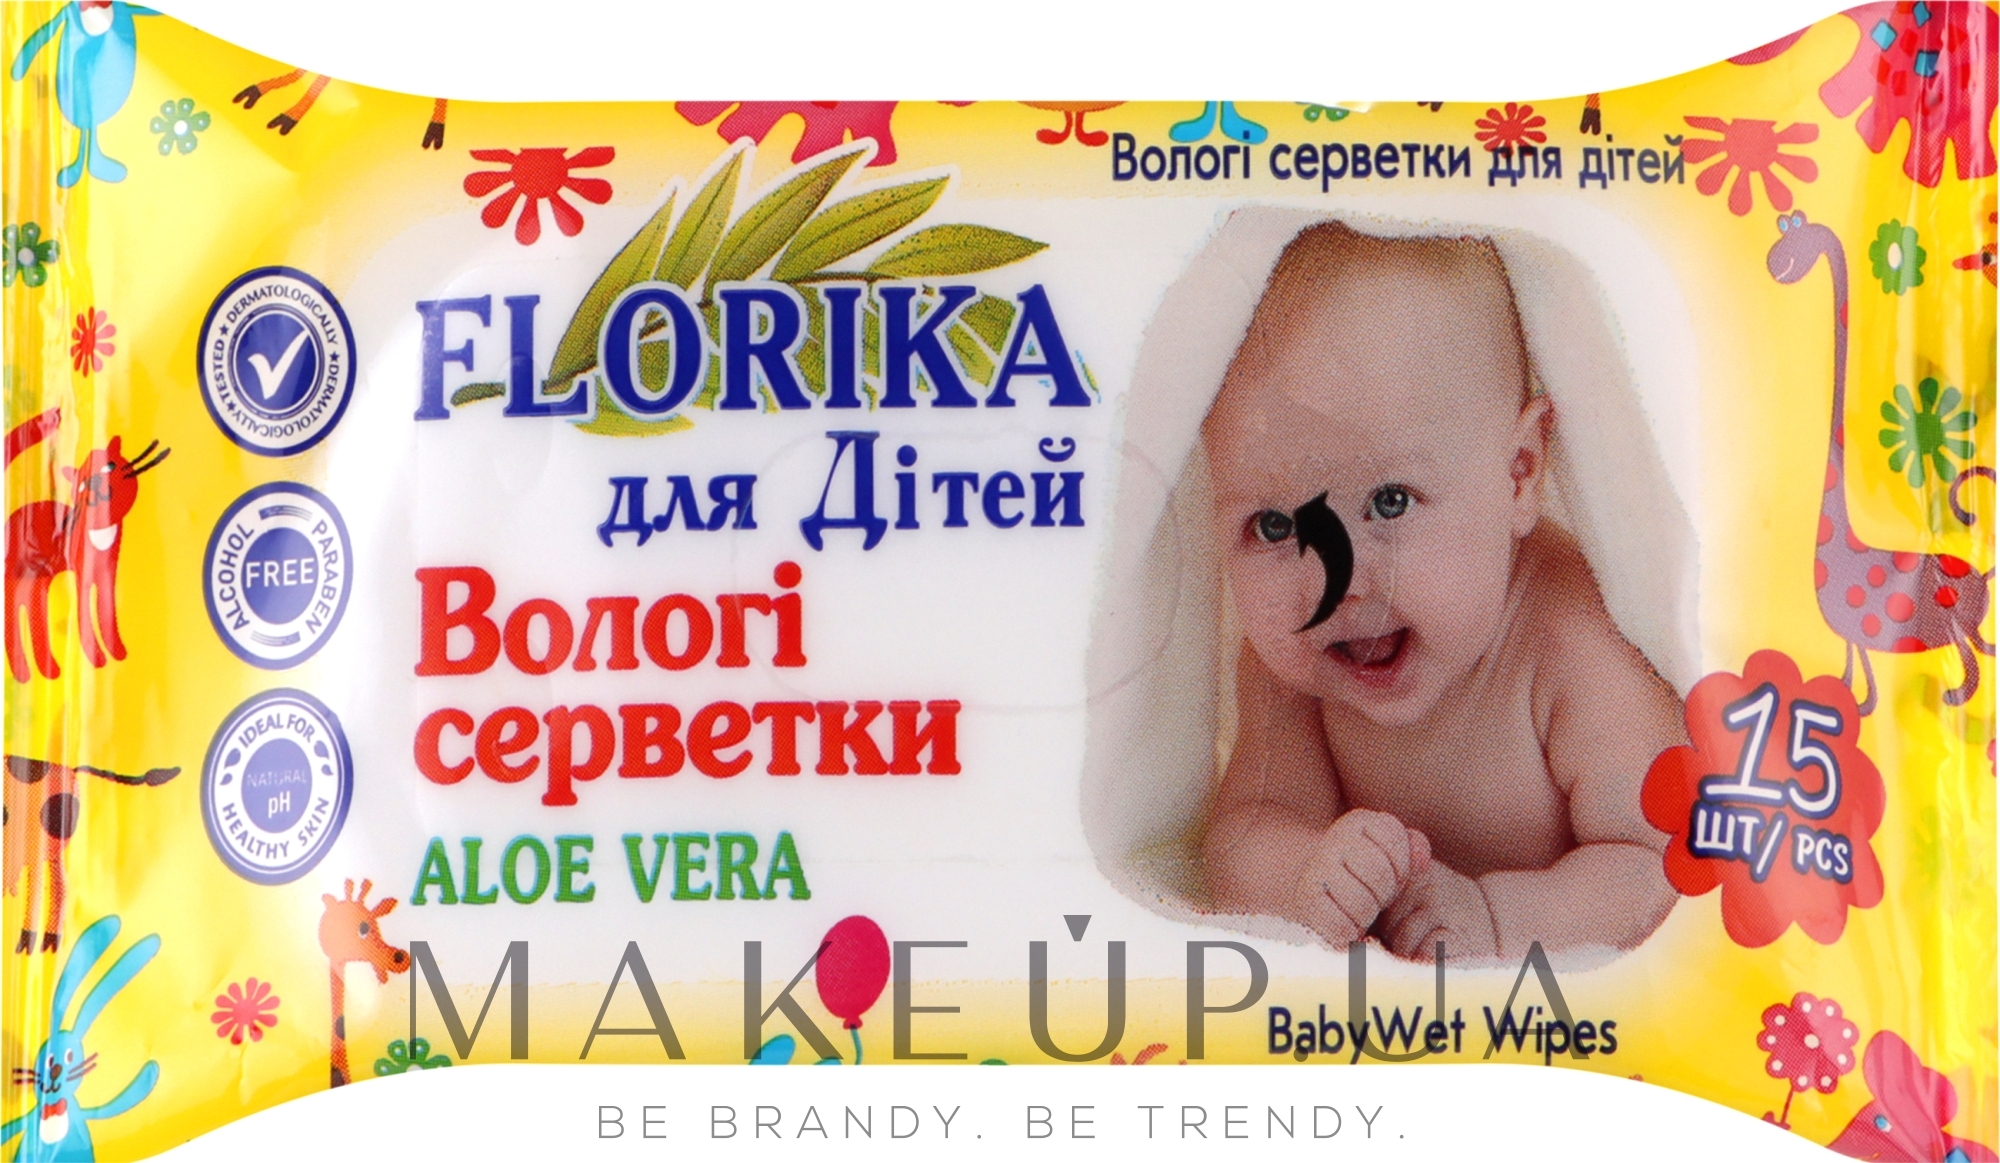 Вологі серветки для дітей "Алое вера", 15 шт., жовті - Florika Baby Wet Wipes Aloe Vera — фото 15шт